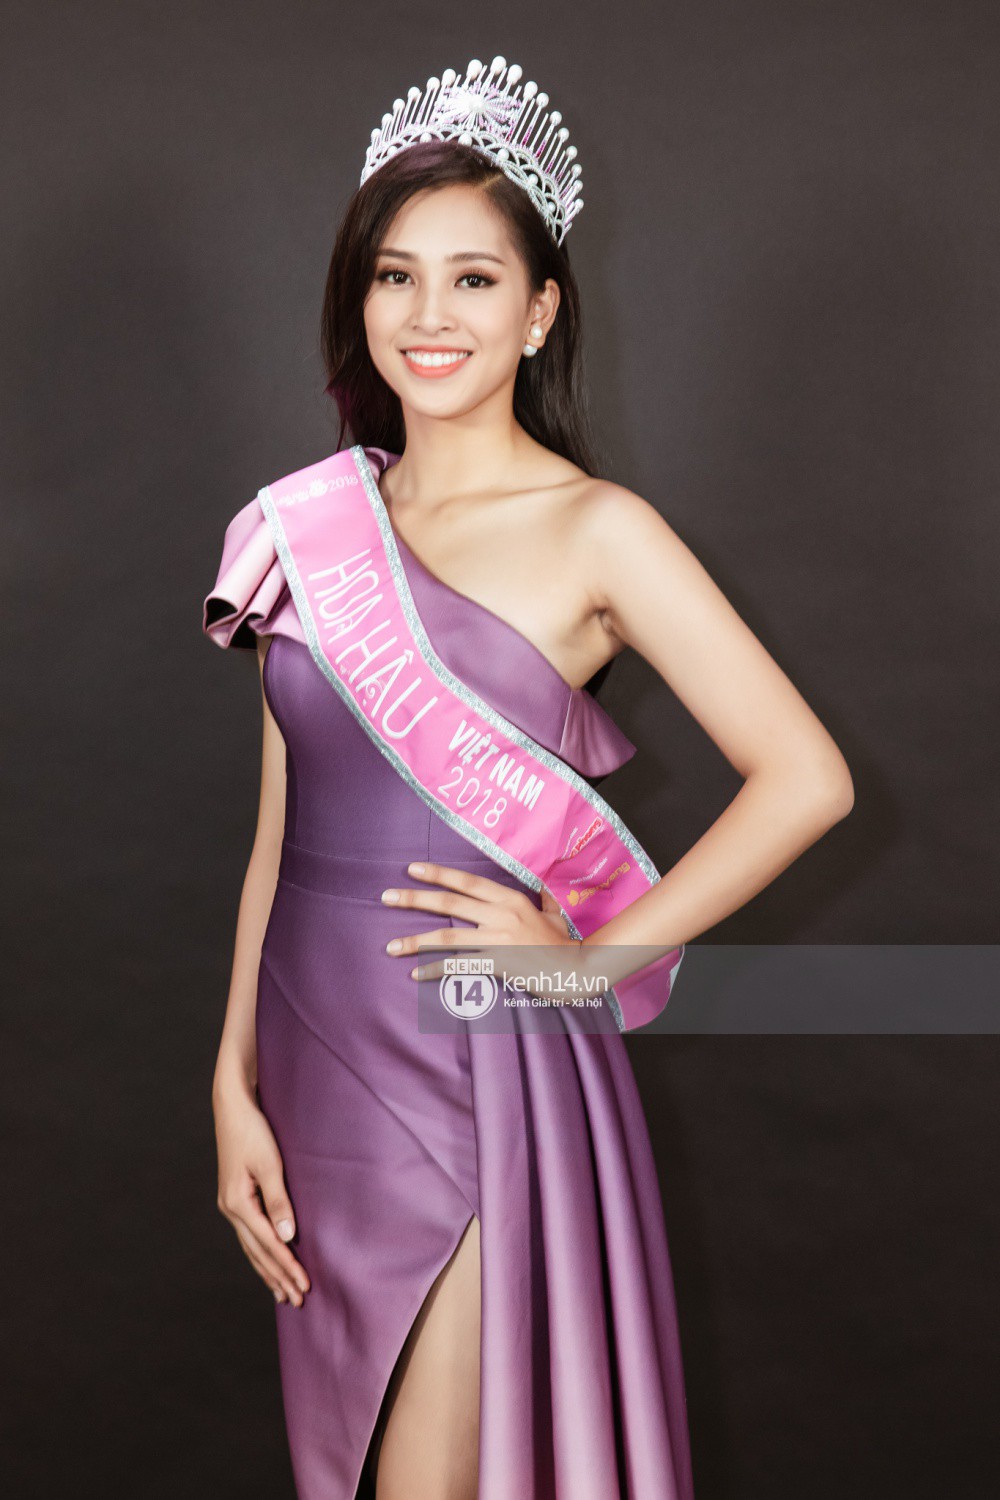 Ngắm cận vẻ đẹp của Top 3 Hoa hậu Việt Nam 2018: Mỹ nhân 2000 được khen sắc sảo, 2 nàng Á mười phân vẹn mười-6